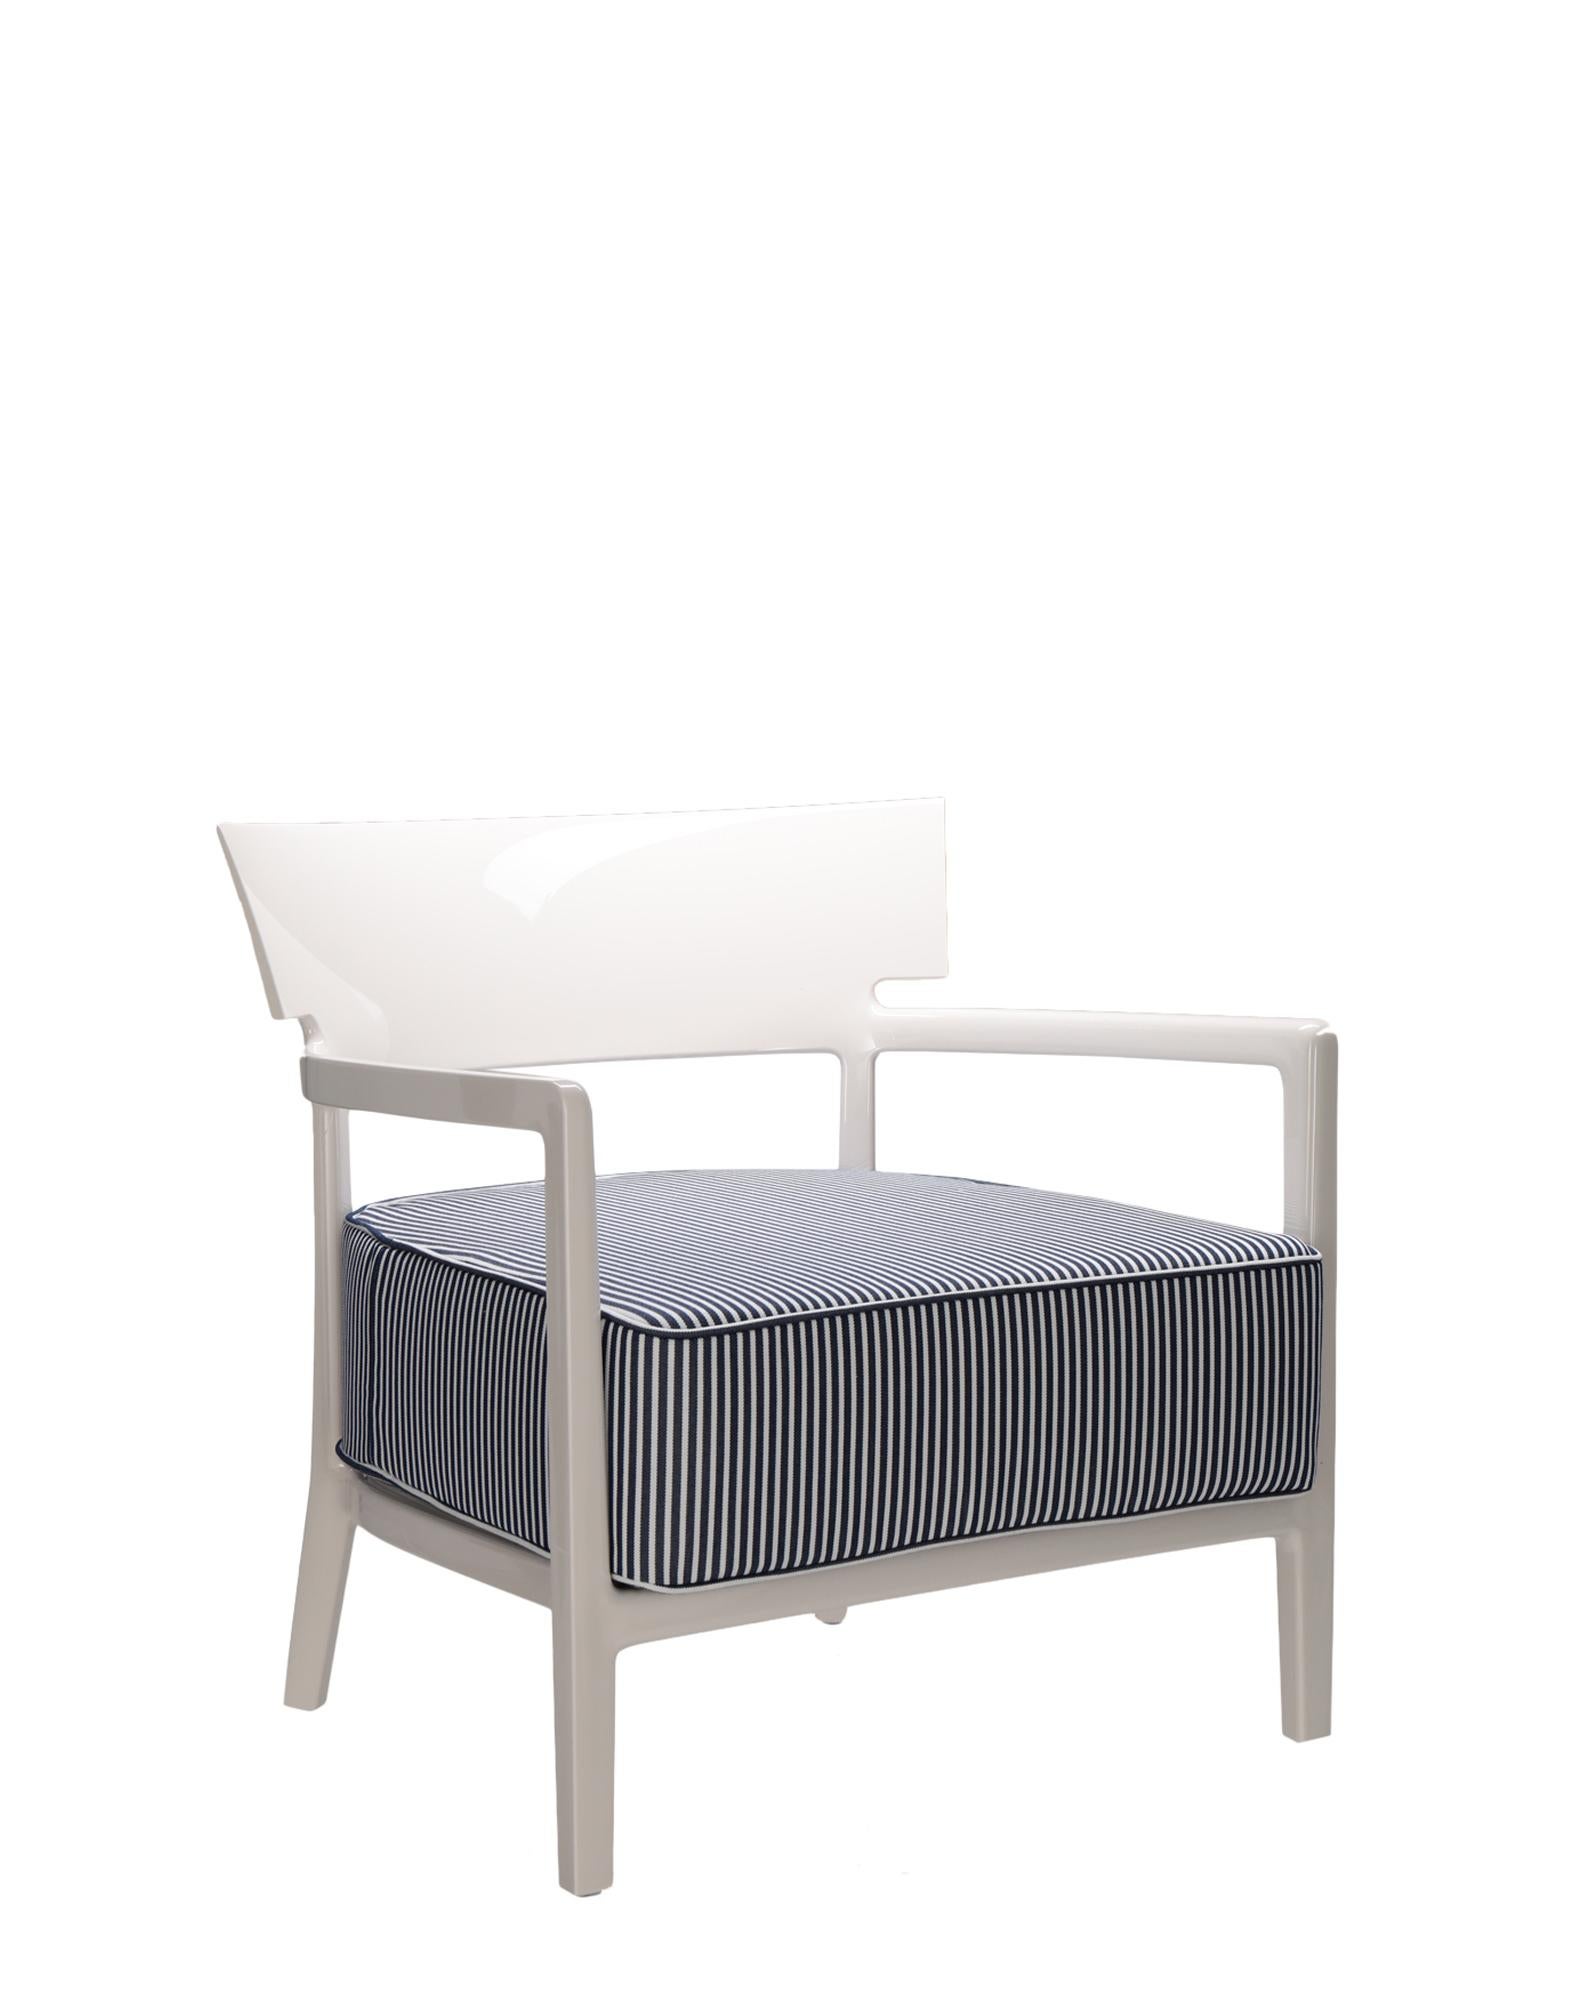 Im Sessel Cara umschließen klassisch strenge Linien eine bequeme Sitzfläche. Die perfekte Kombination aus Formalismus und technologischer Innovation für ein originelles Produkt mit industrieller Ausstrahlung, das die Palette der weichen